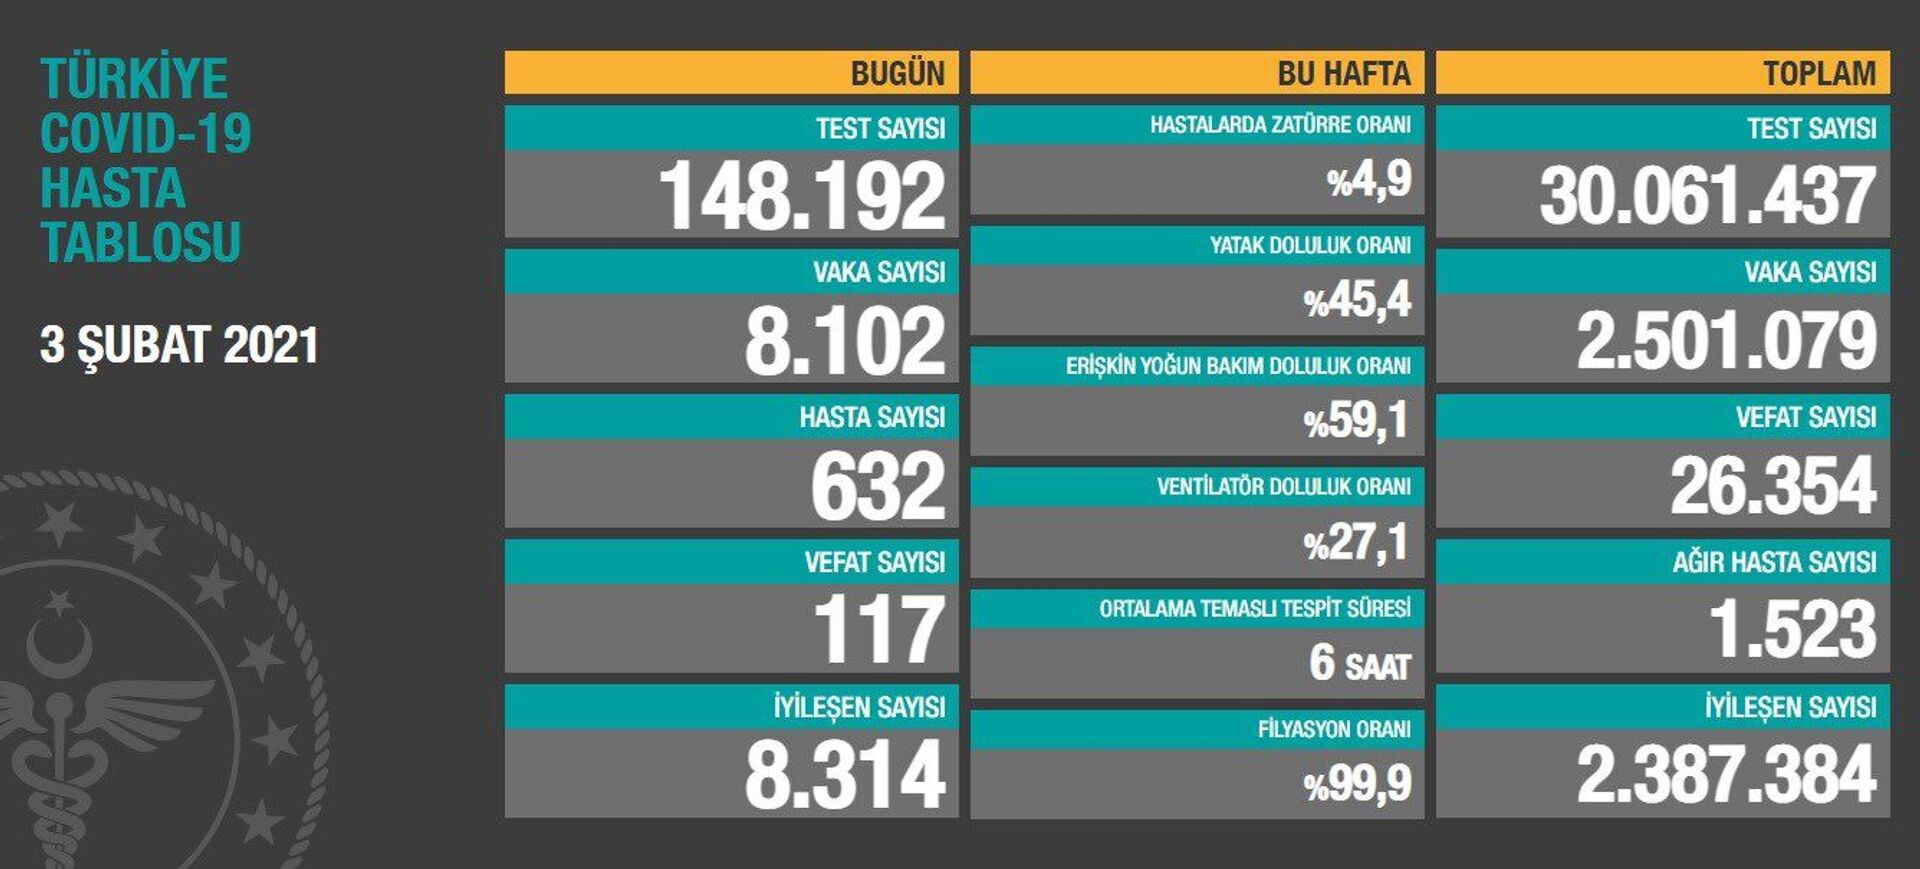 Türkiye'de son 24 saatte 117 kişi hayatını kaybetti, 8 bin 102 kişinin testi pozitif çıktı - Sputnik Türkiye, 1920, 03.02.2021